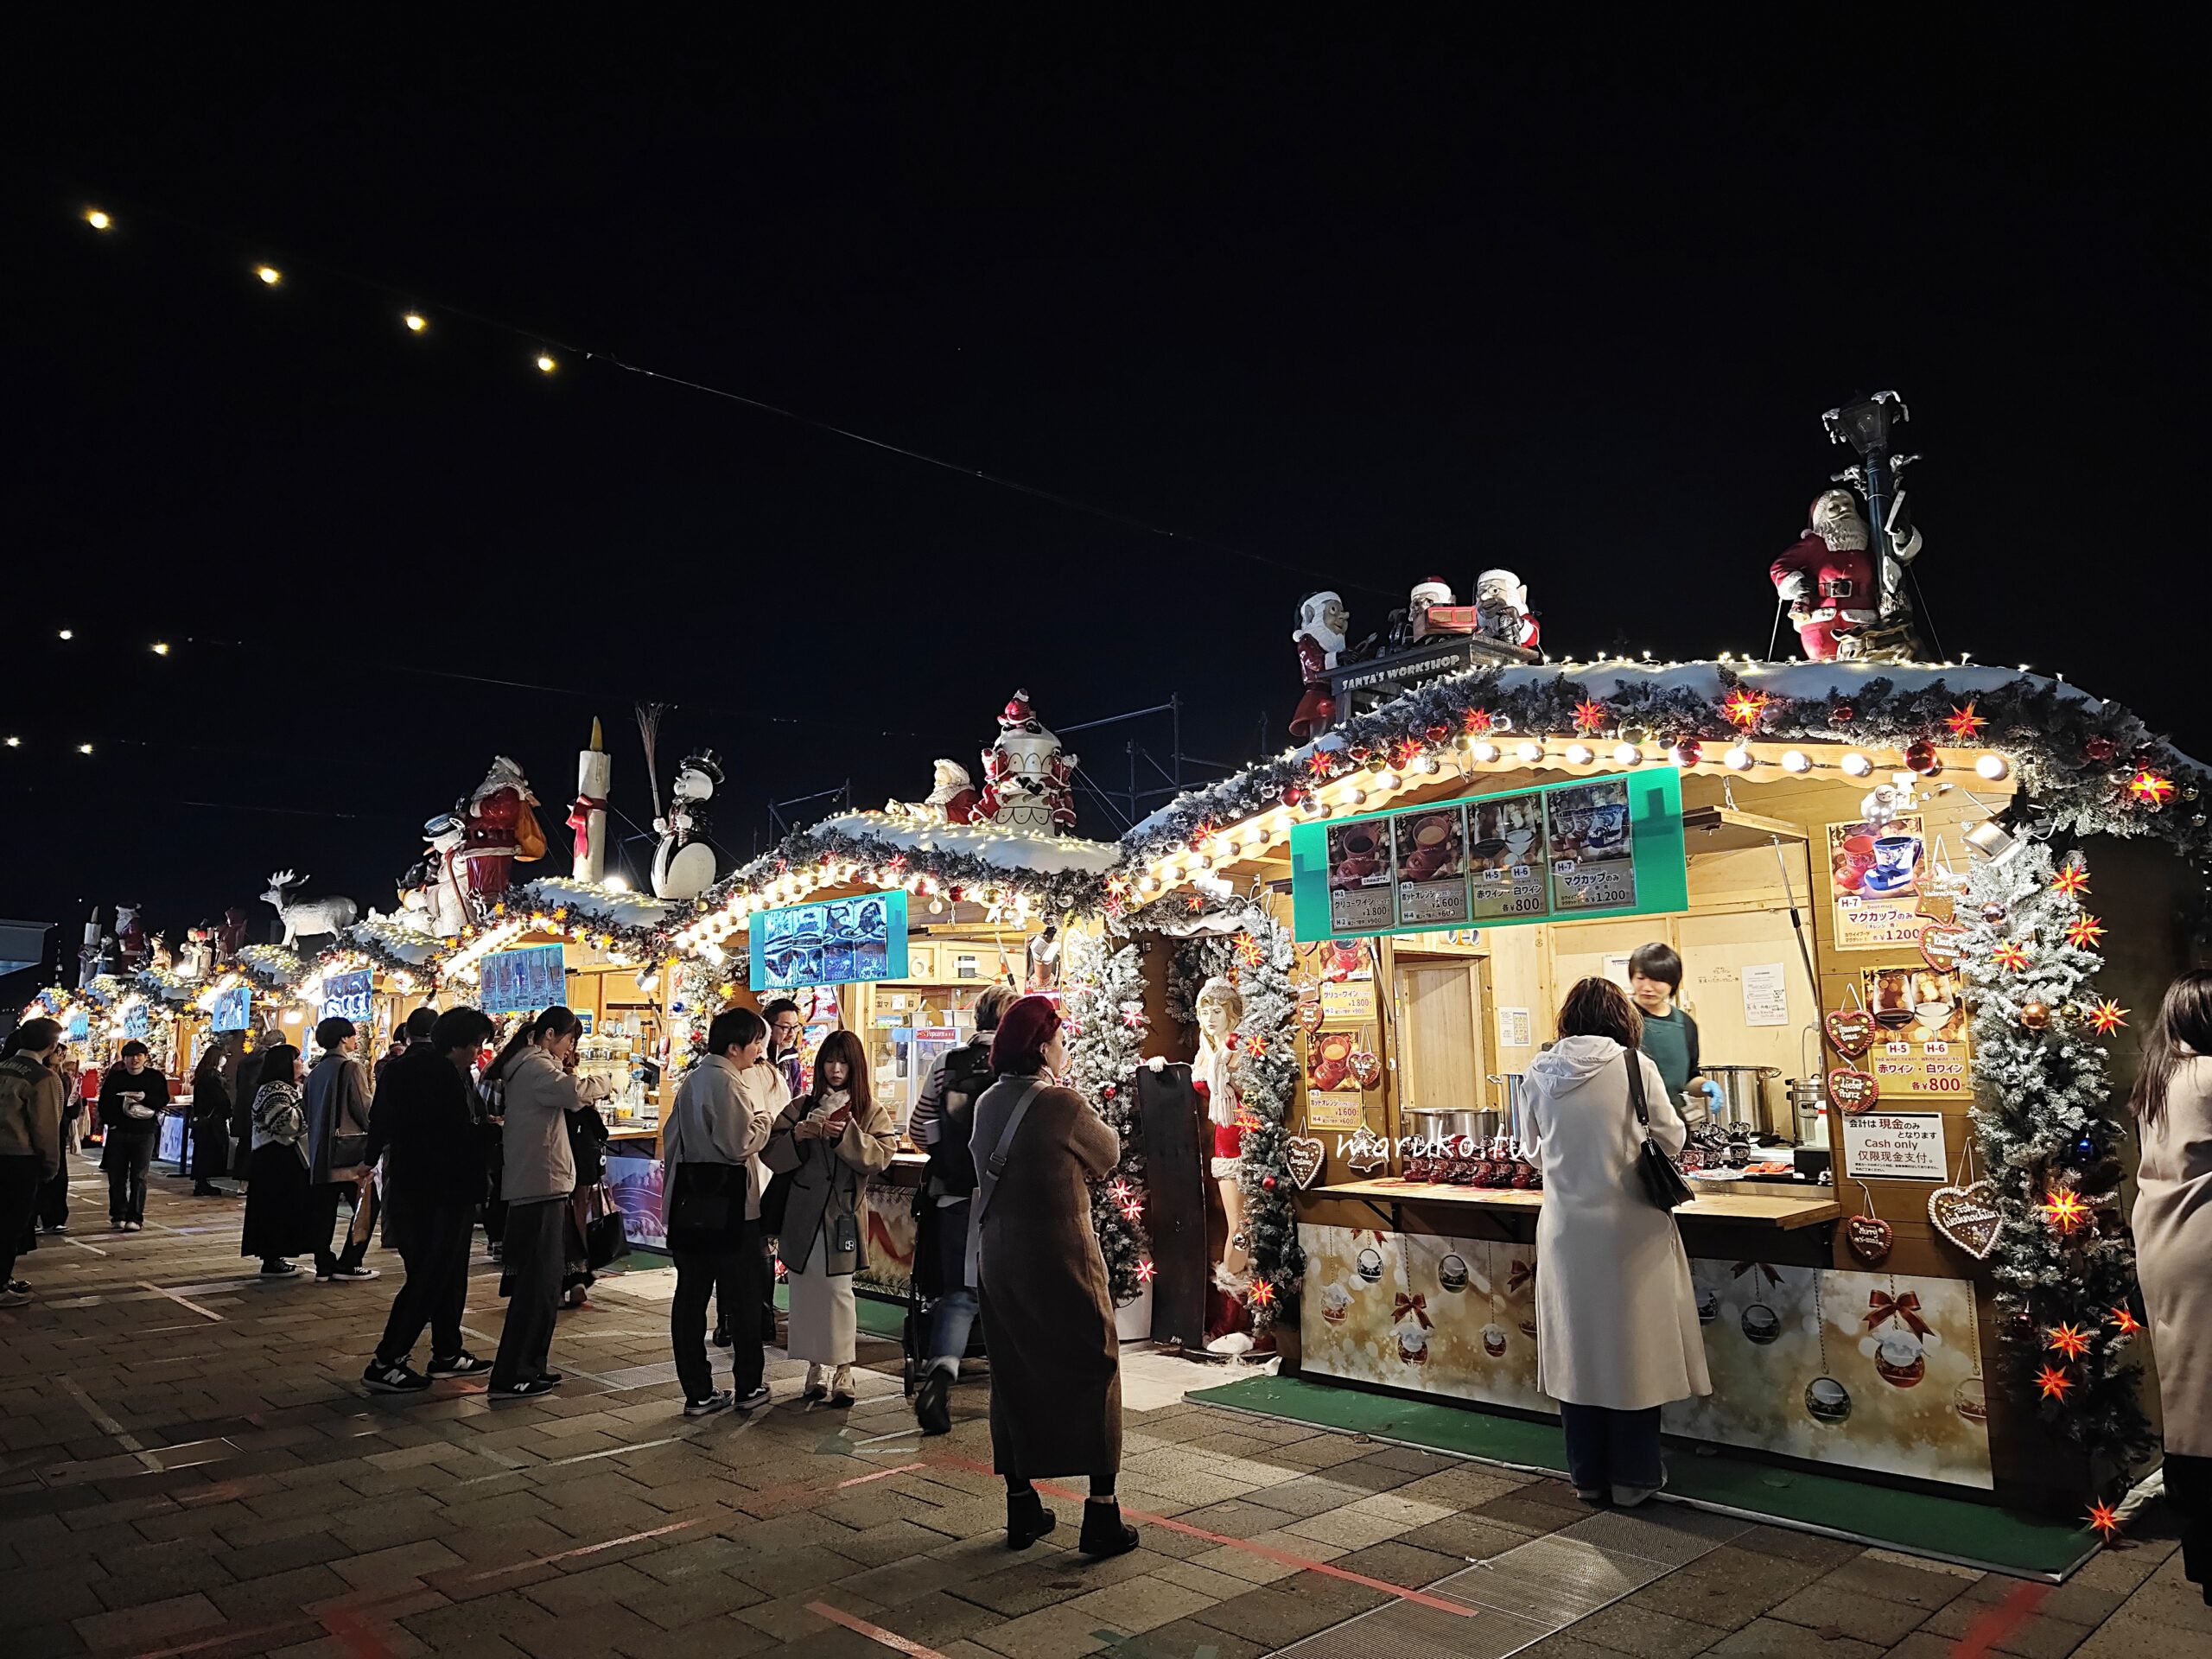 【東京】東京晴空塔 tokyo-skytree 東京天空樹過聖誕，押上站周邊景點推薦！ @Maruko與美食有個約會